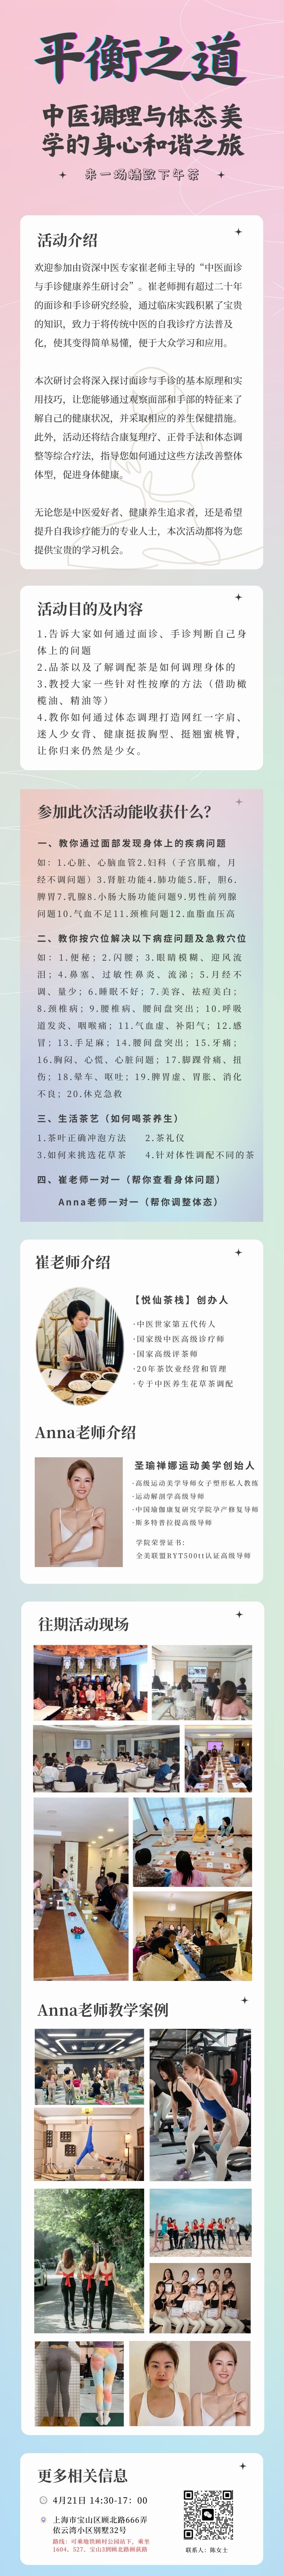 粉蓝紫色校园艺术节精致校园宣传中文信息图表 副本.jpg